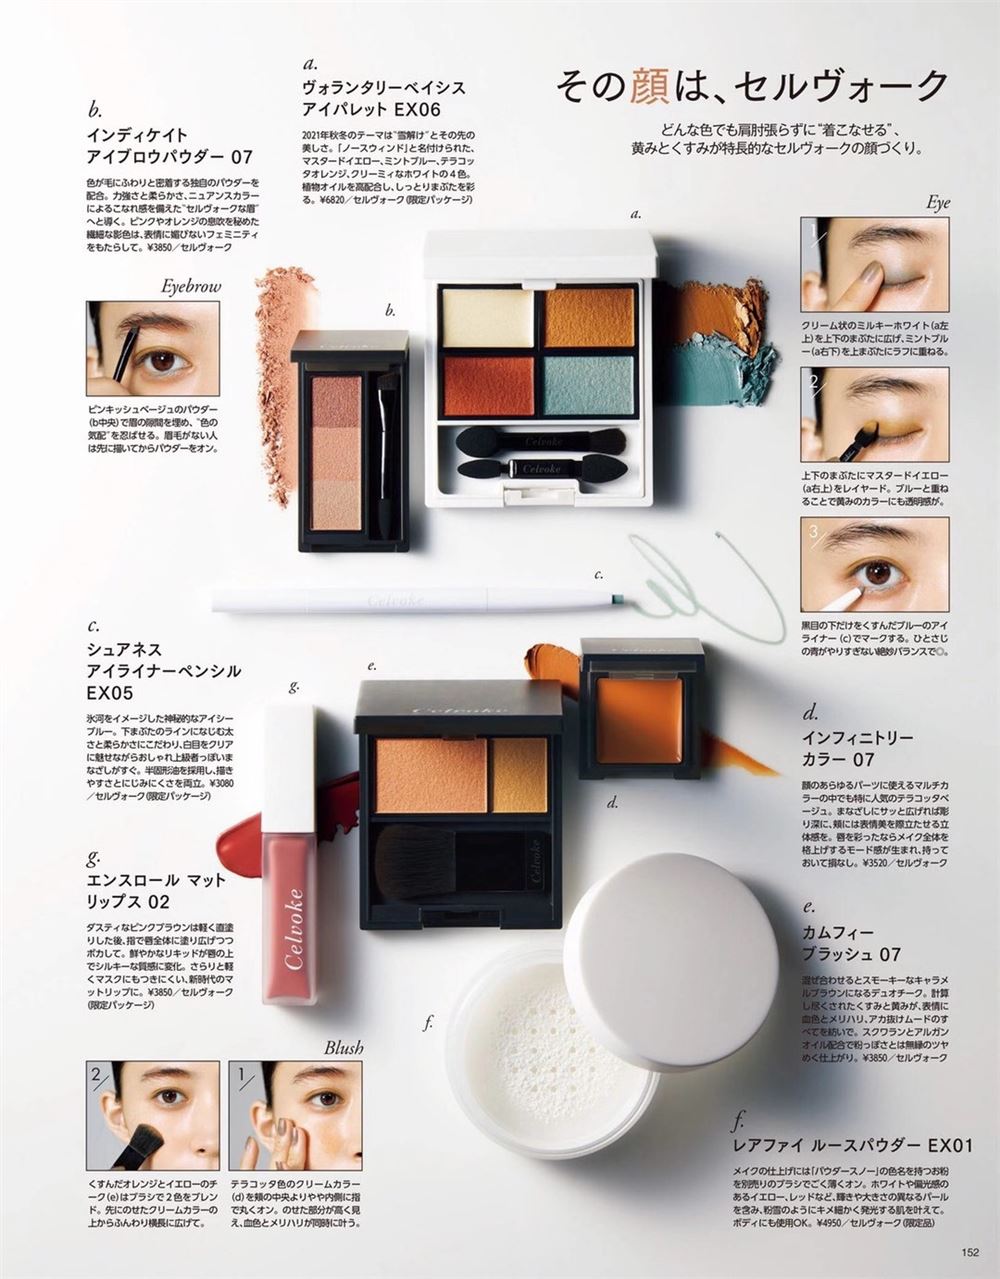 【瑜伽健身上新】 《MAQUIA》 2021年11月 日本时尚女性美容化妆穿搭美妆杂志